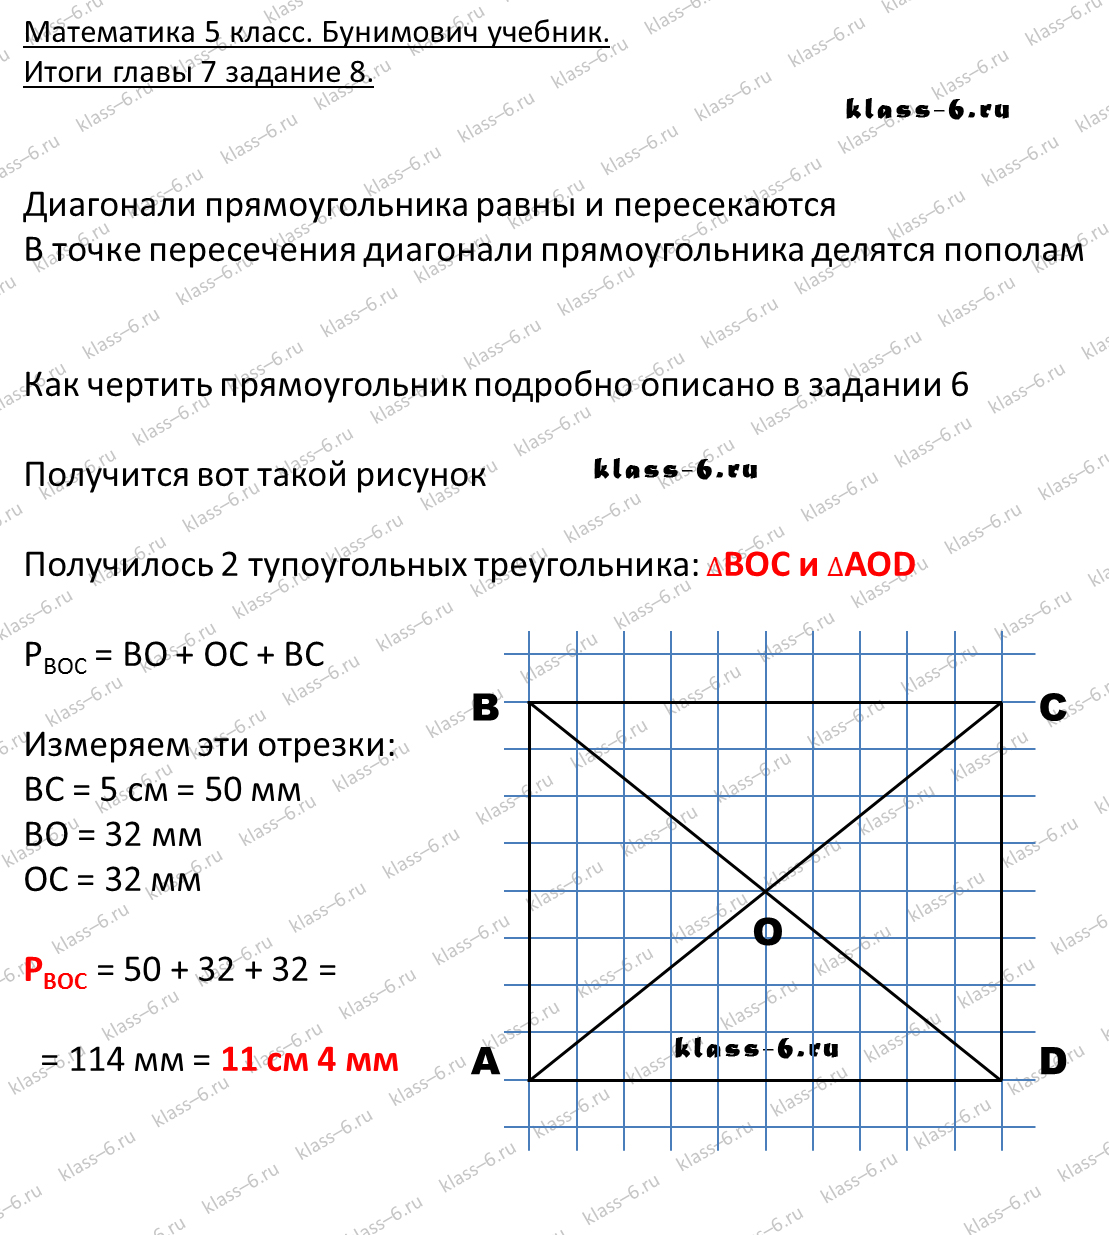 решебник и гдз по математике учебник Бунимович 5 класс итоги главы 7-8